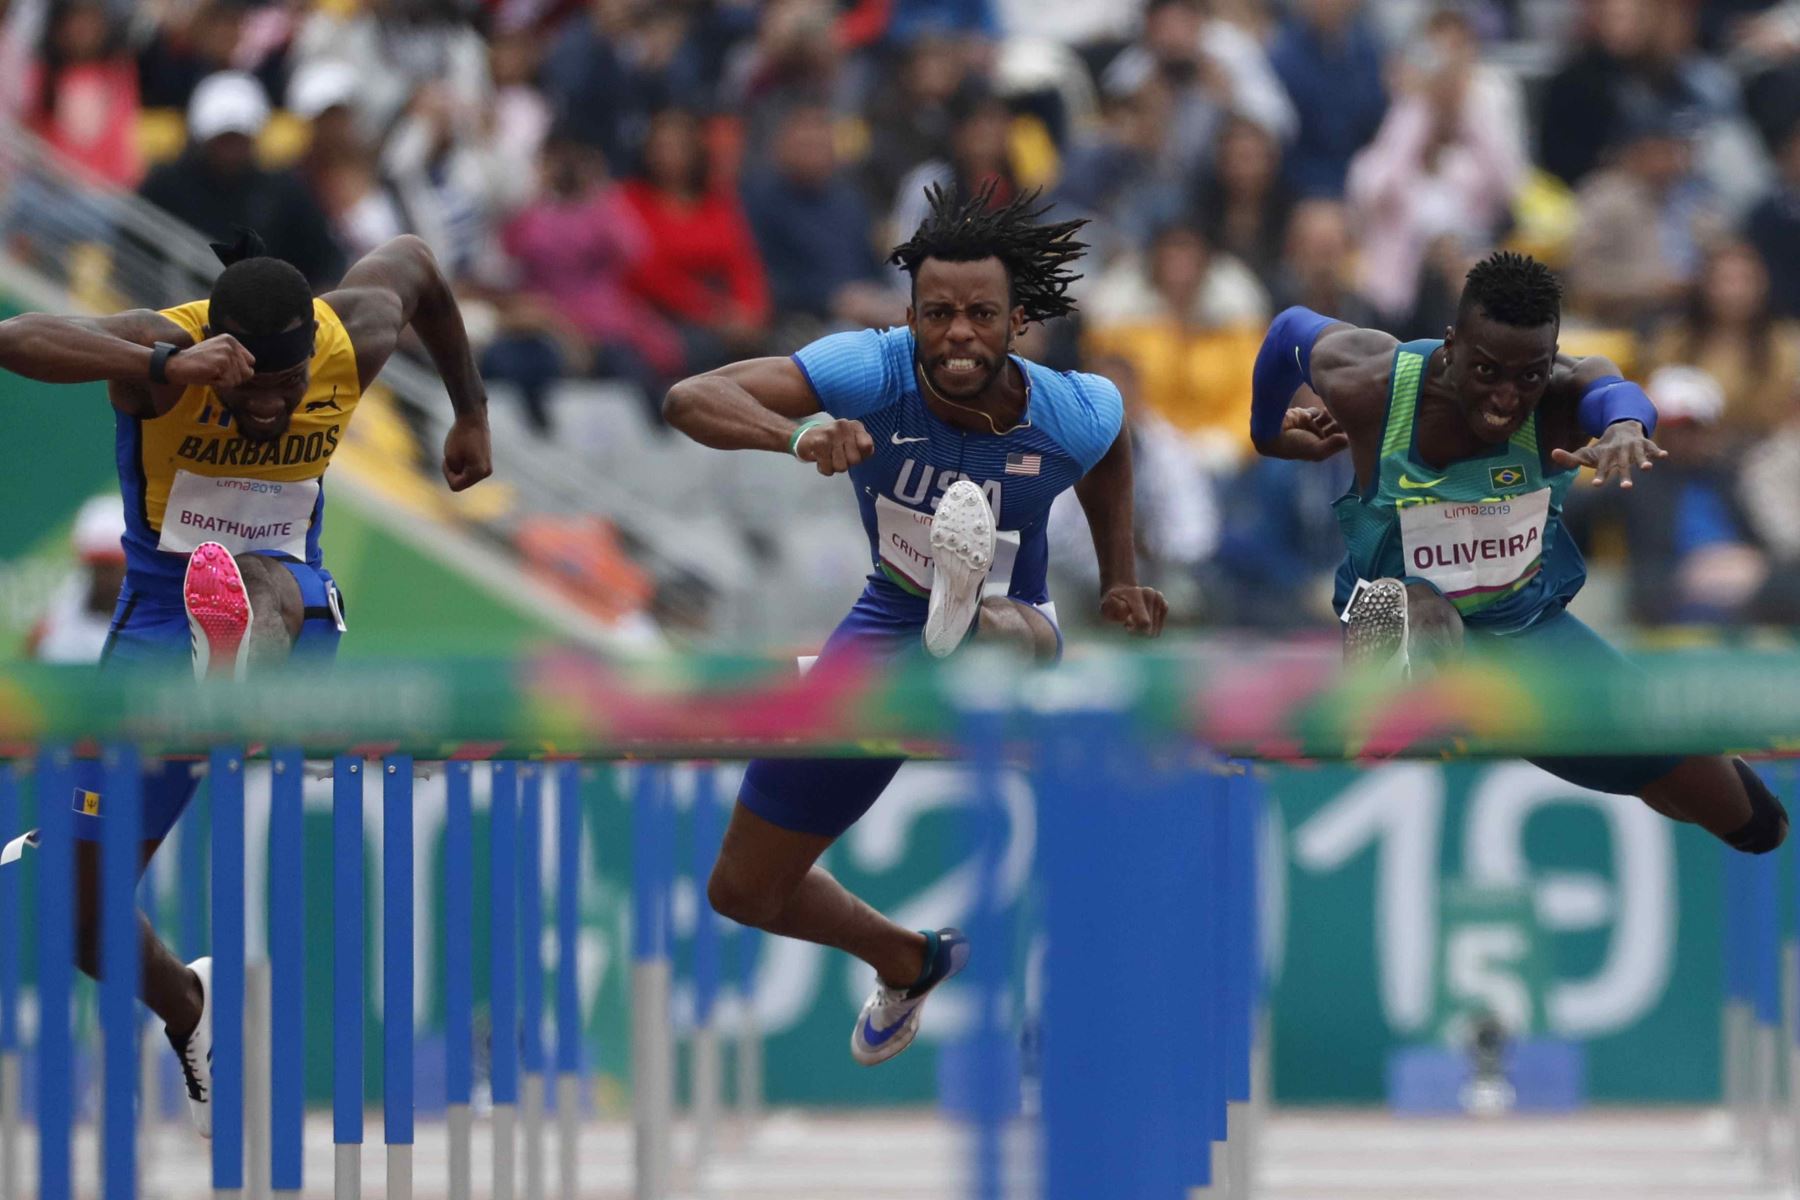 Shane Brathwaite de Barbados; Freddie Crittenden III; de EE.UU. y Habriel Oliveira Constantin de Brasil compiten en la final de 110 metros vallas de las pruebas de Atletismo este sábado, en los Juegos Panamericanos Lima 2019. EFE